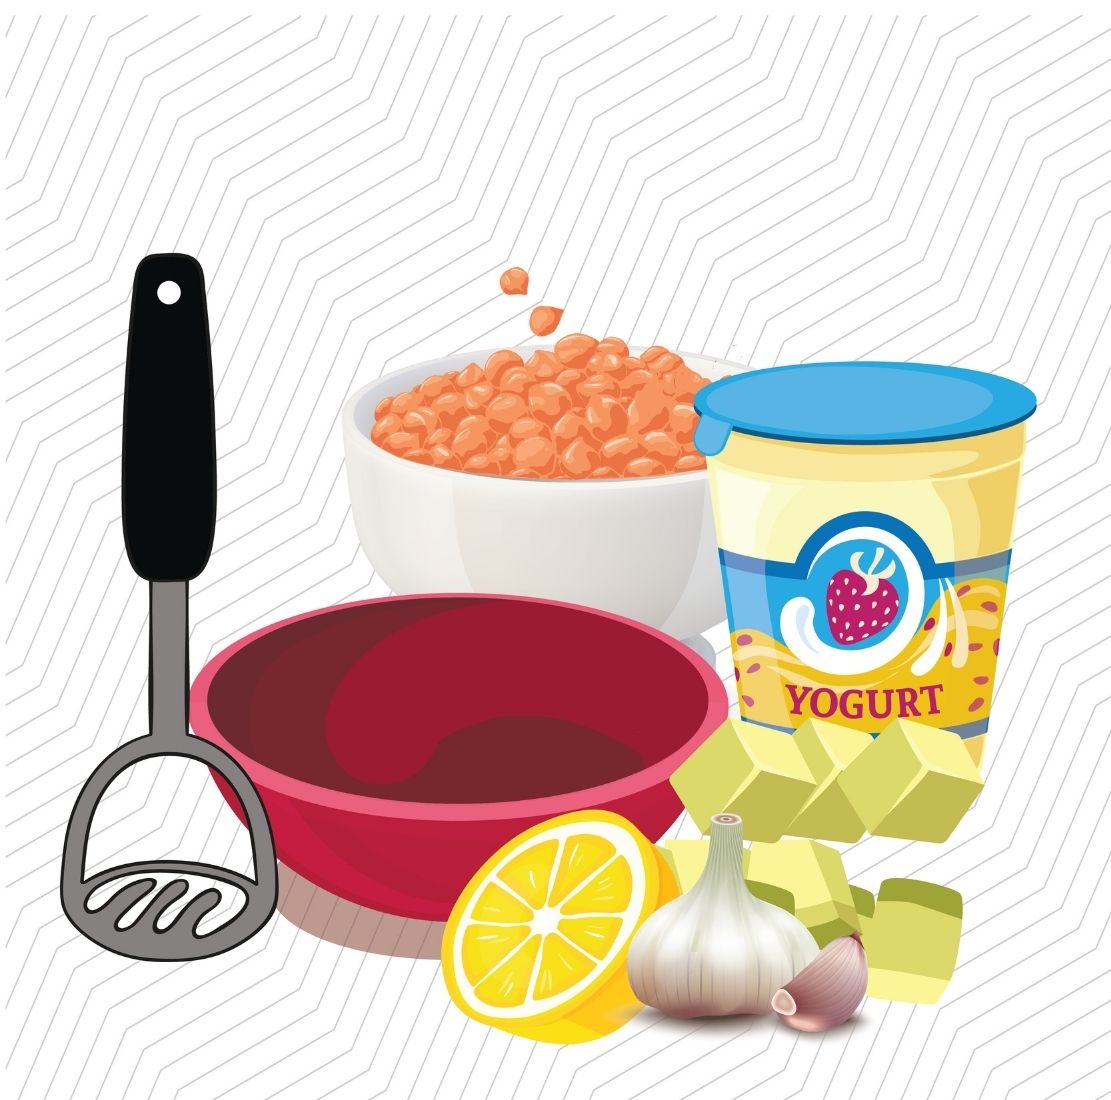 hummus ingredients in a bowl, chickpeas, yogurt